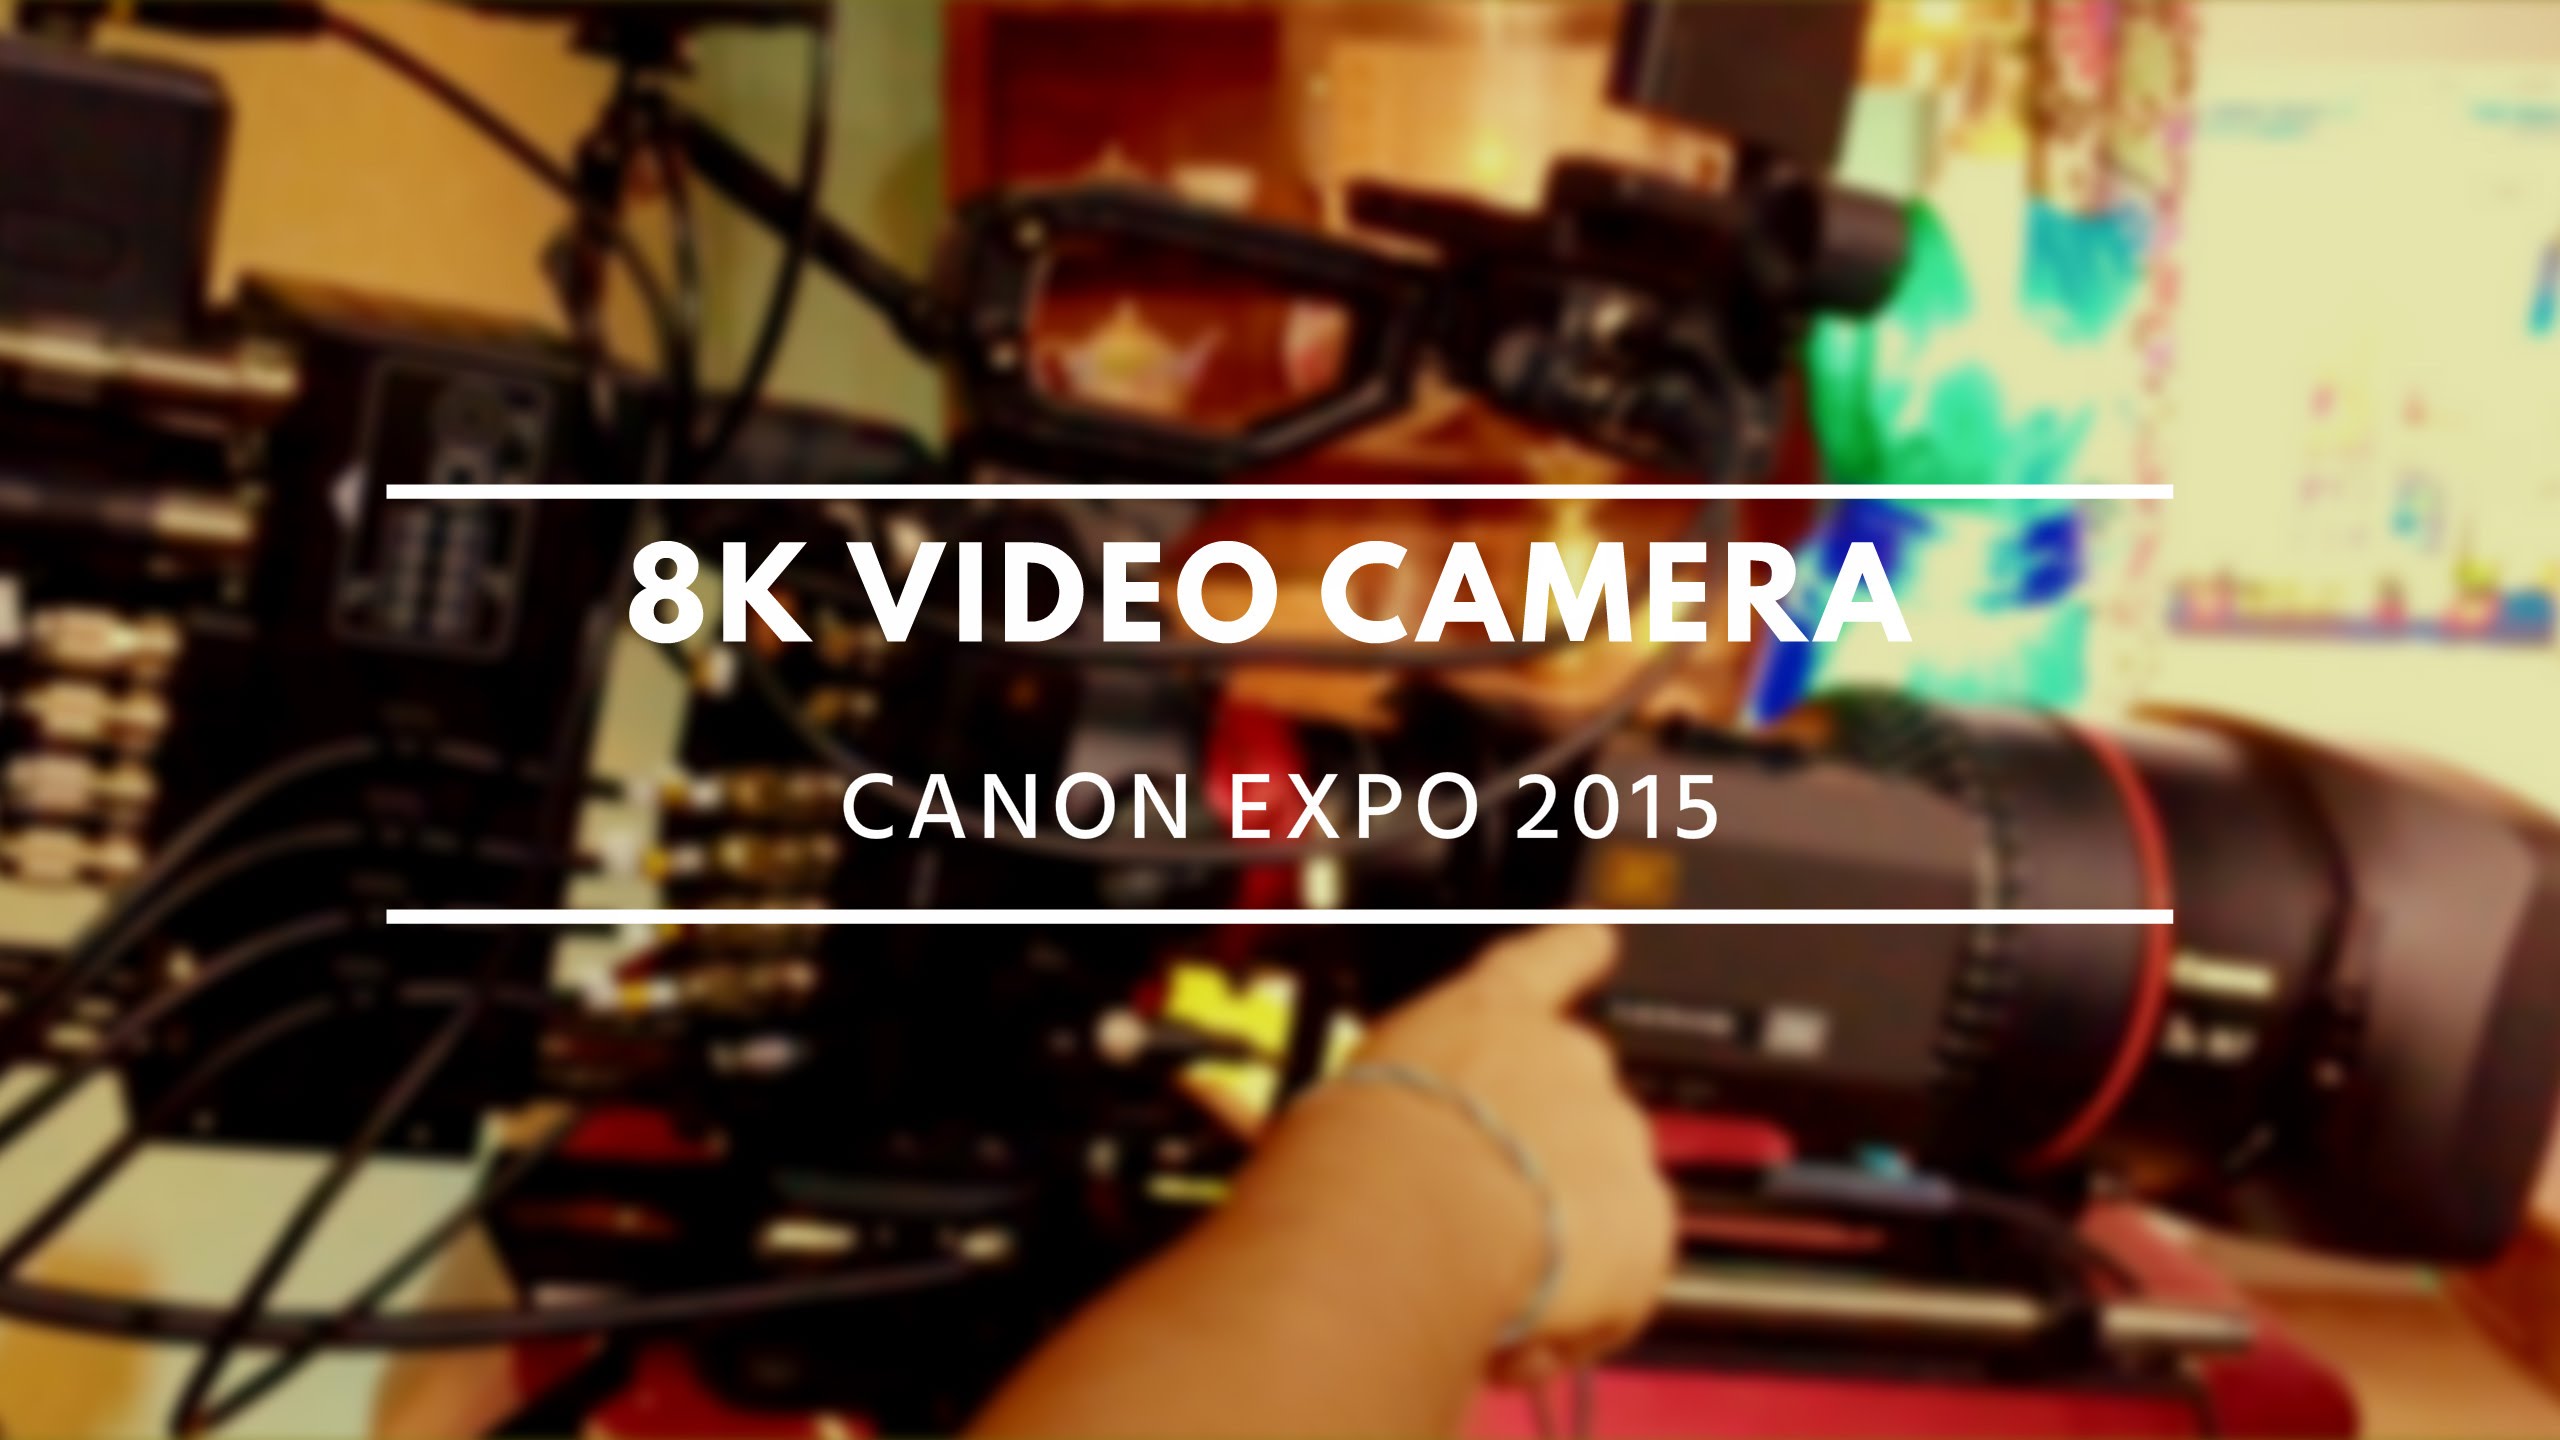 8K Video Camera / Canon EXPO 2015 Paris